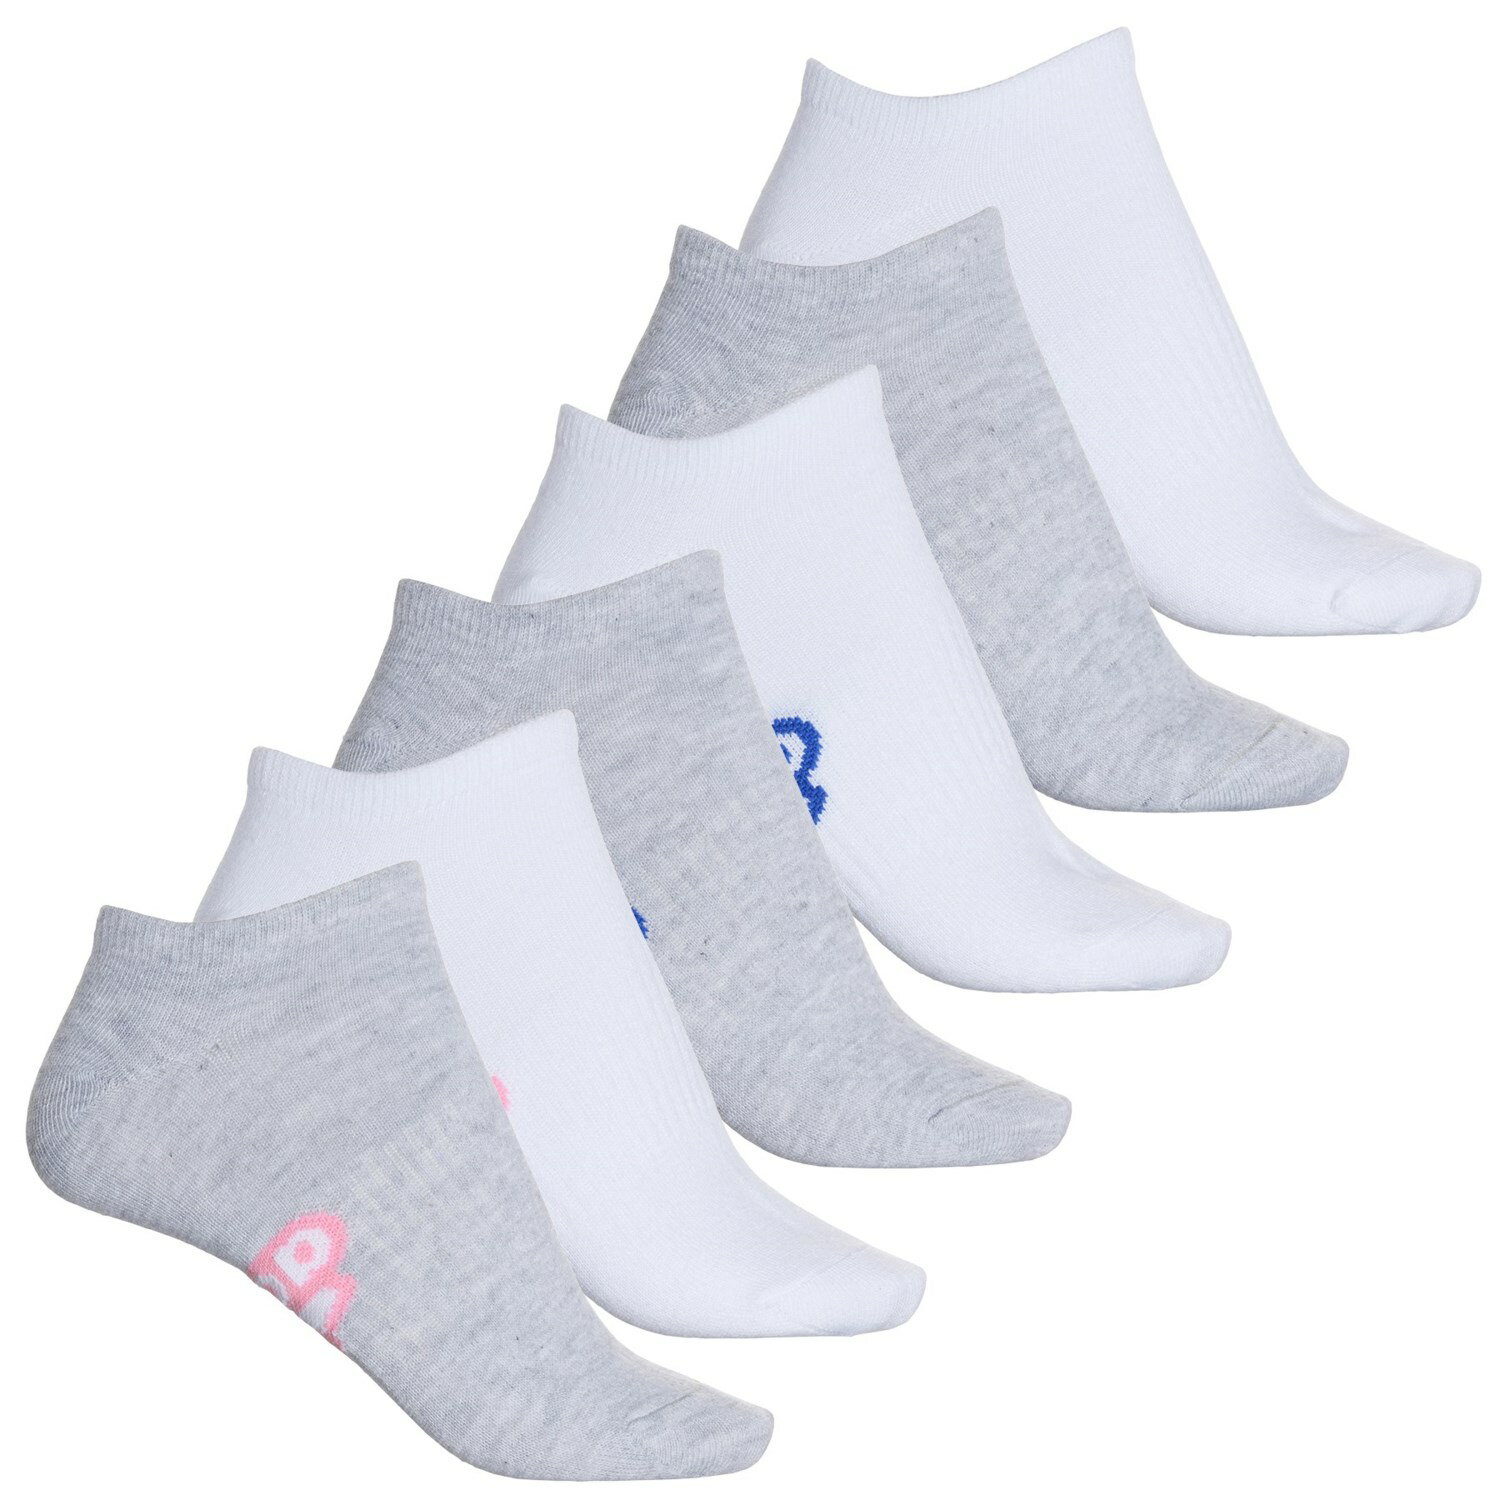 () AfB_X fB[X X|[c m[V[ \bNX adidas women Sport No-Show Socks (For Women) Cool Light Heather/White/Bliss Pink